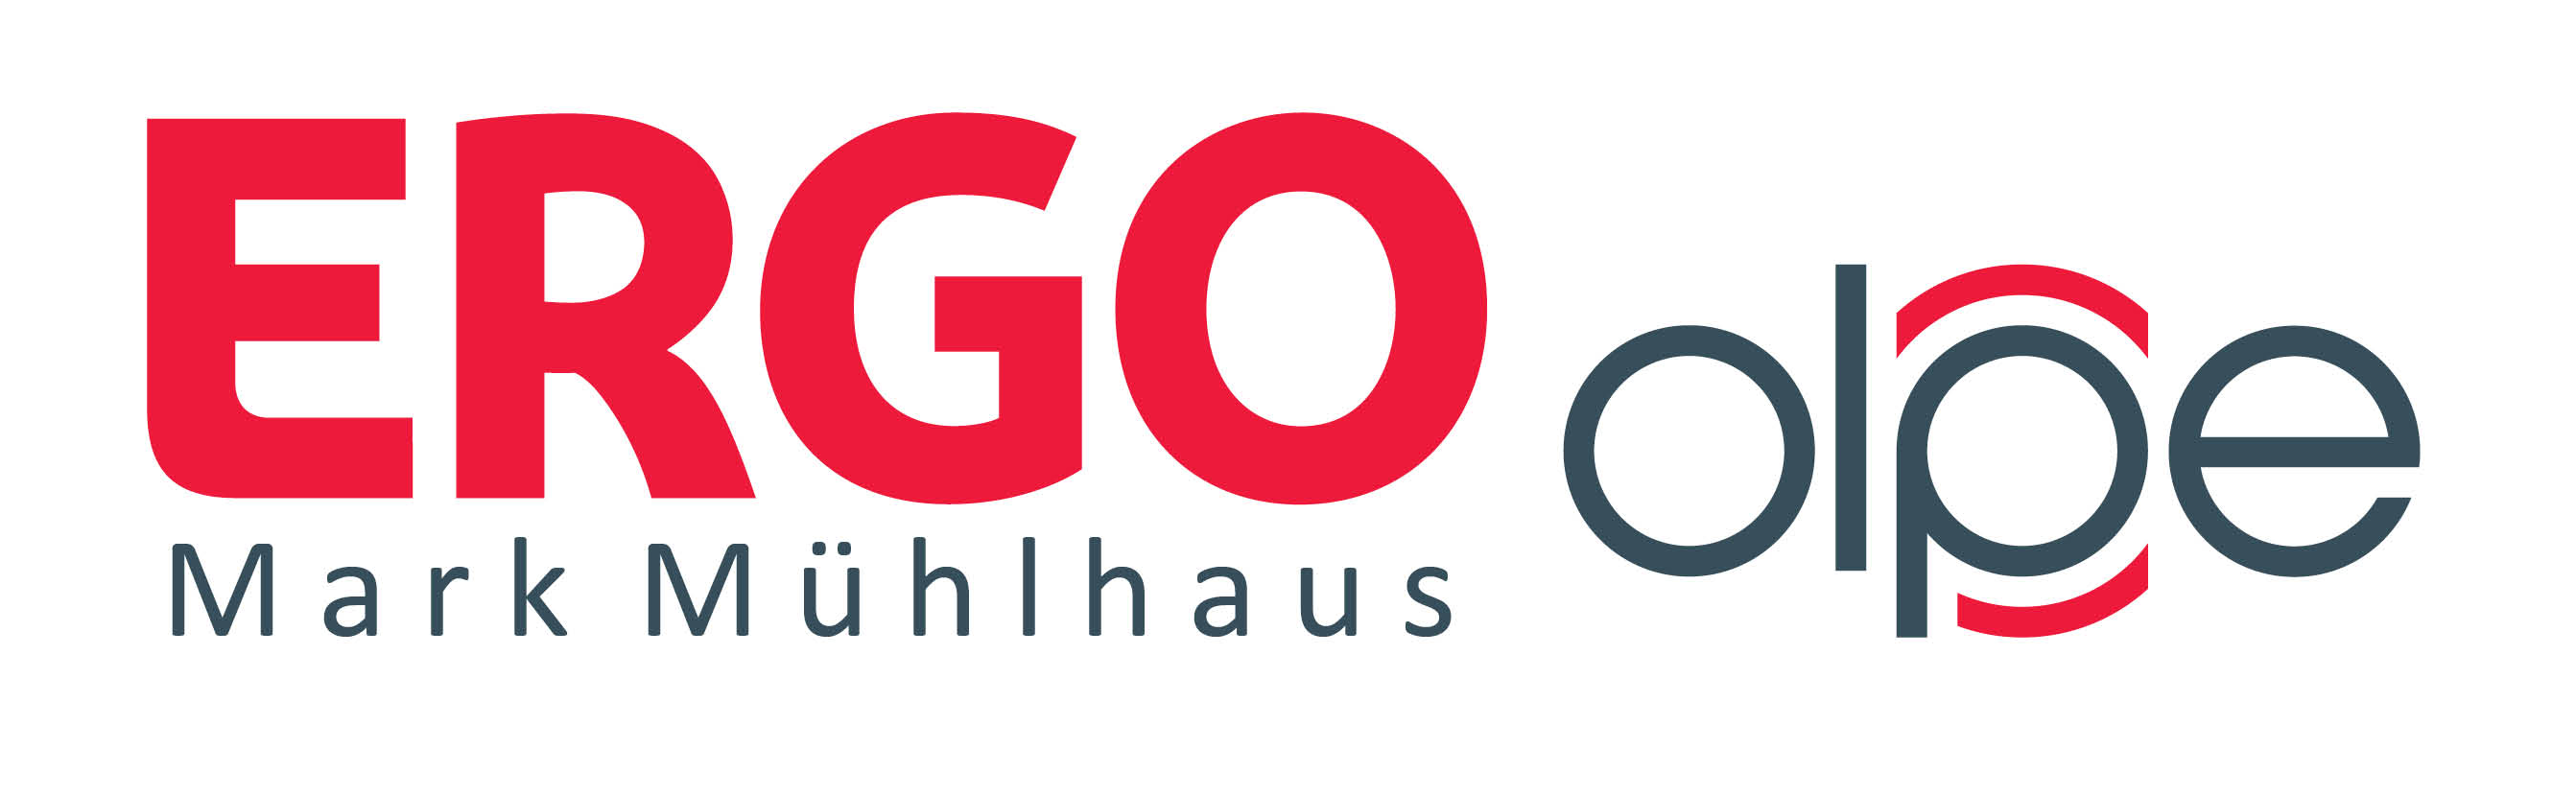 ERGO Versicherung AG - Geschäftsstelle Mark Mühlhaus - Olpe